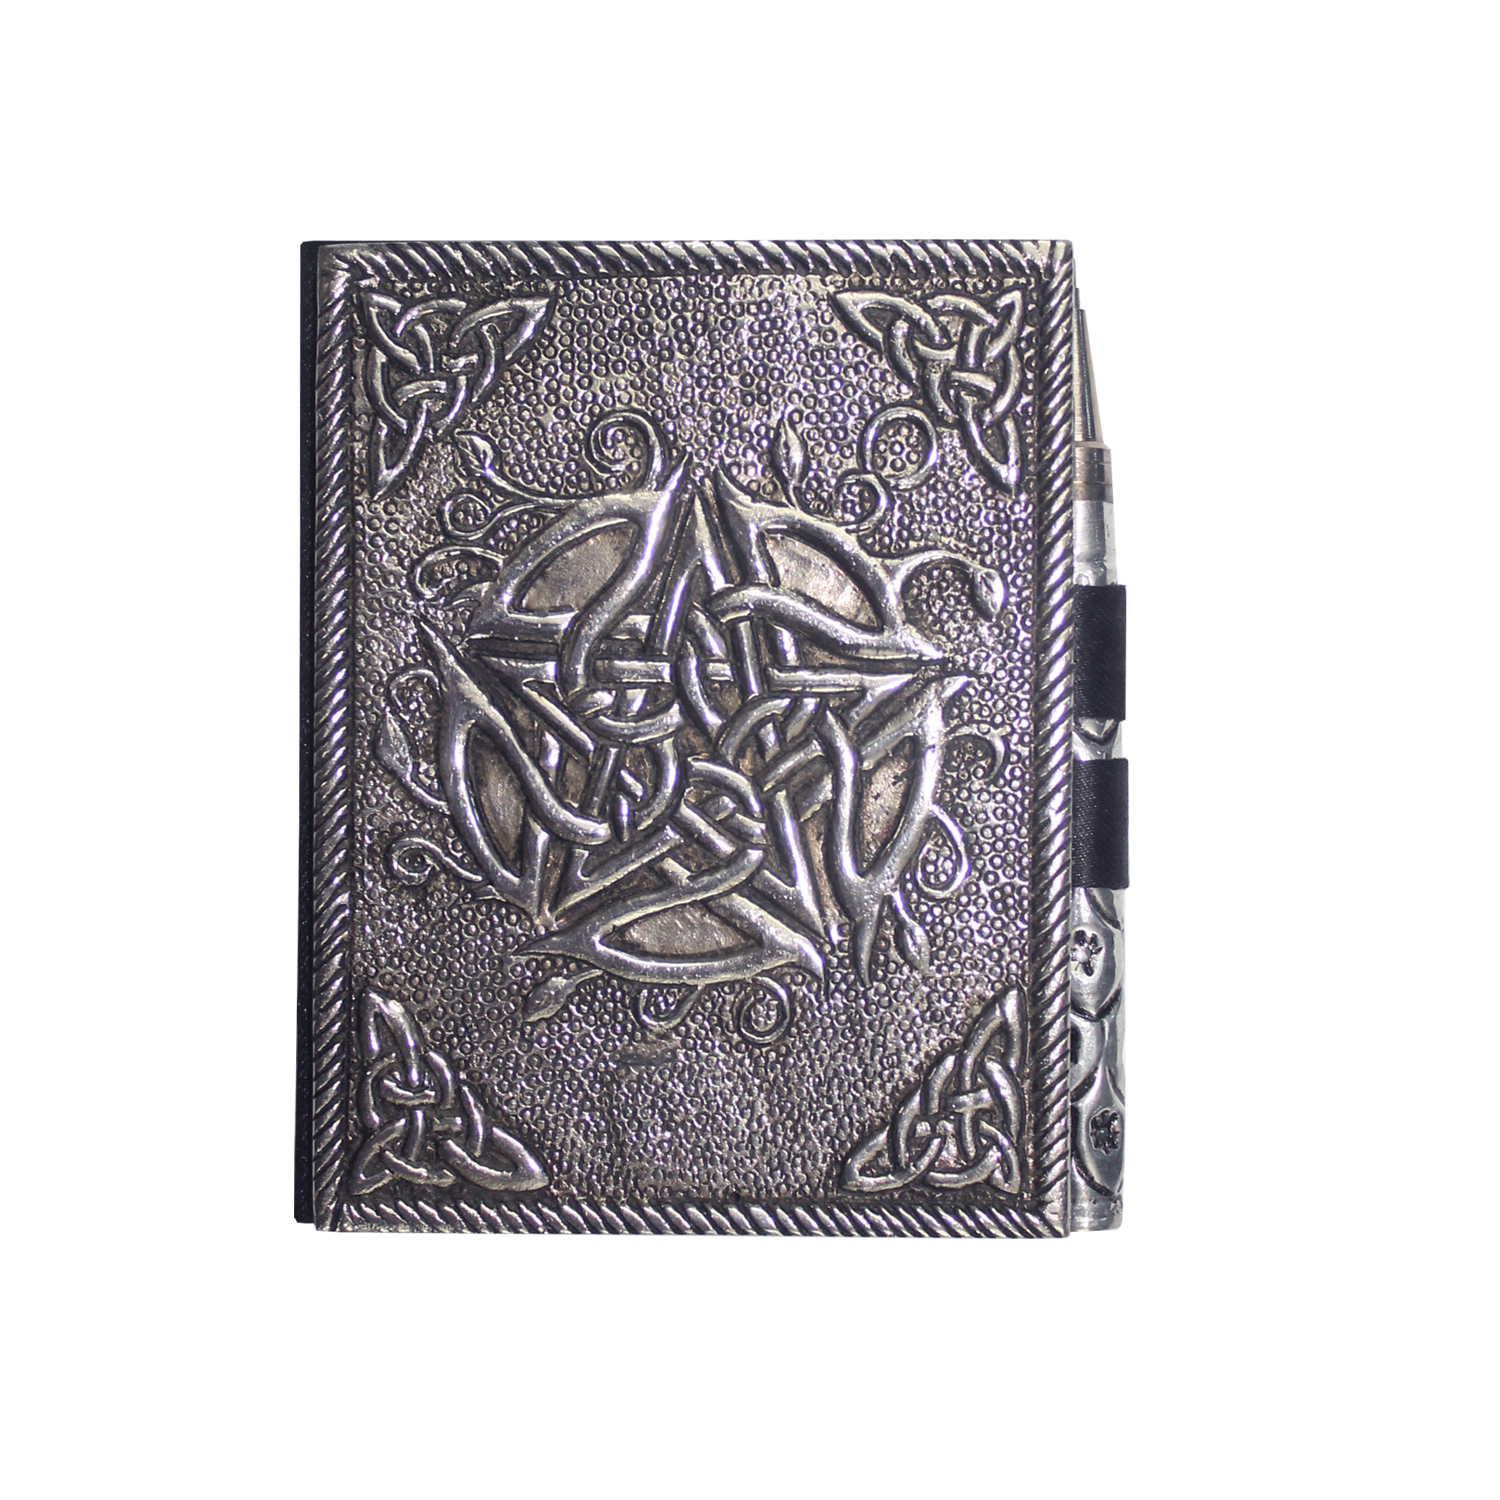 Kleines Notizbuch Wei-metall - Pentagramm unter Schreibmaterialien - Notizb?cher